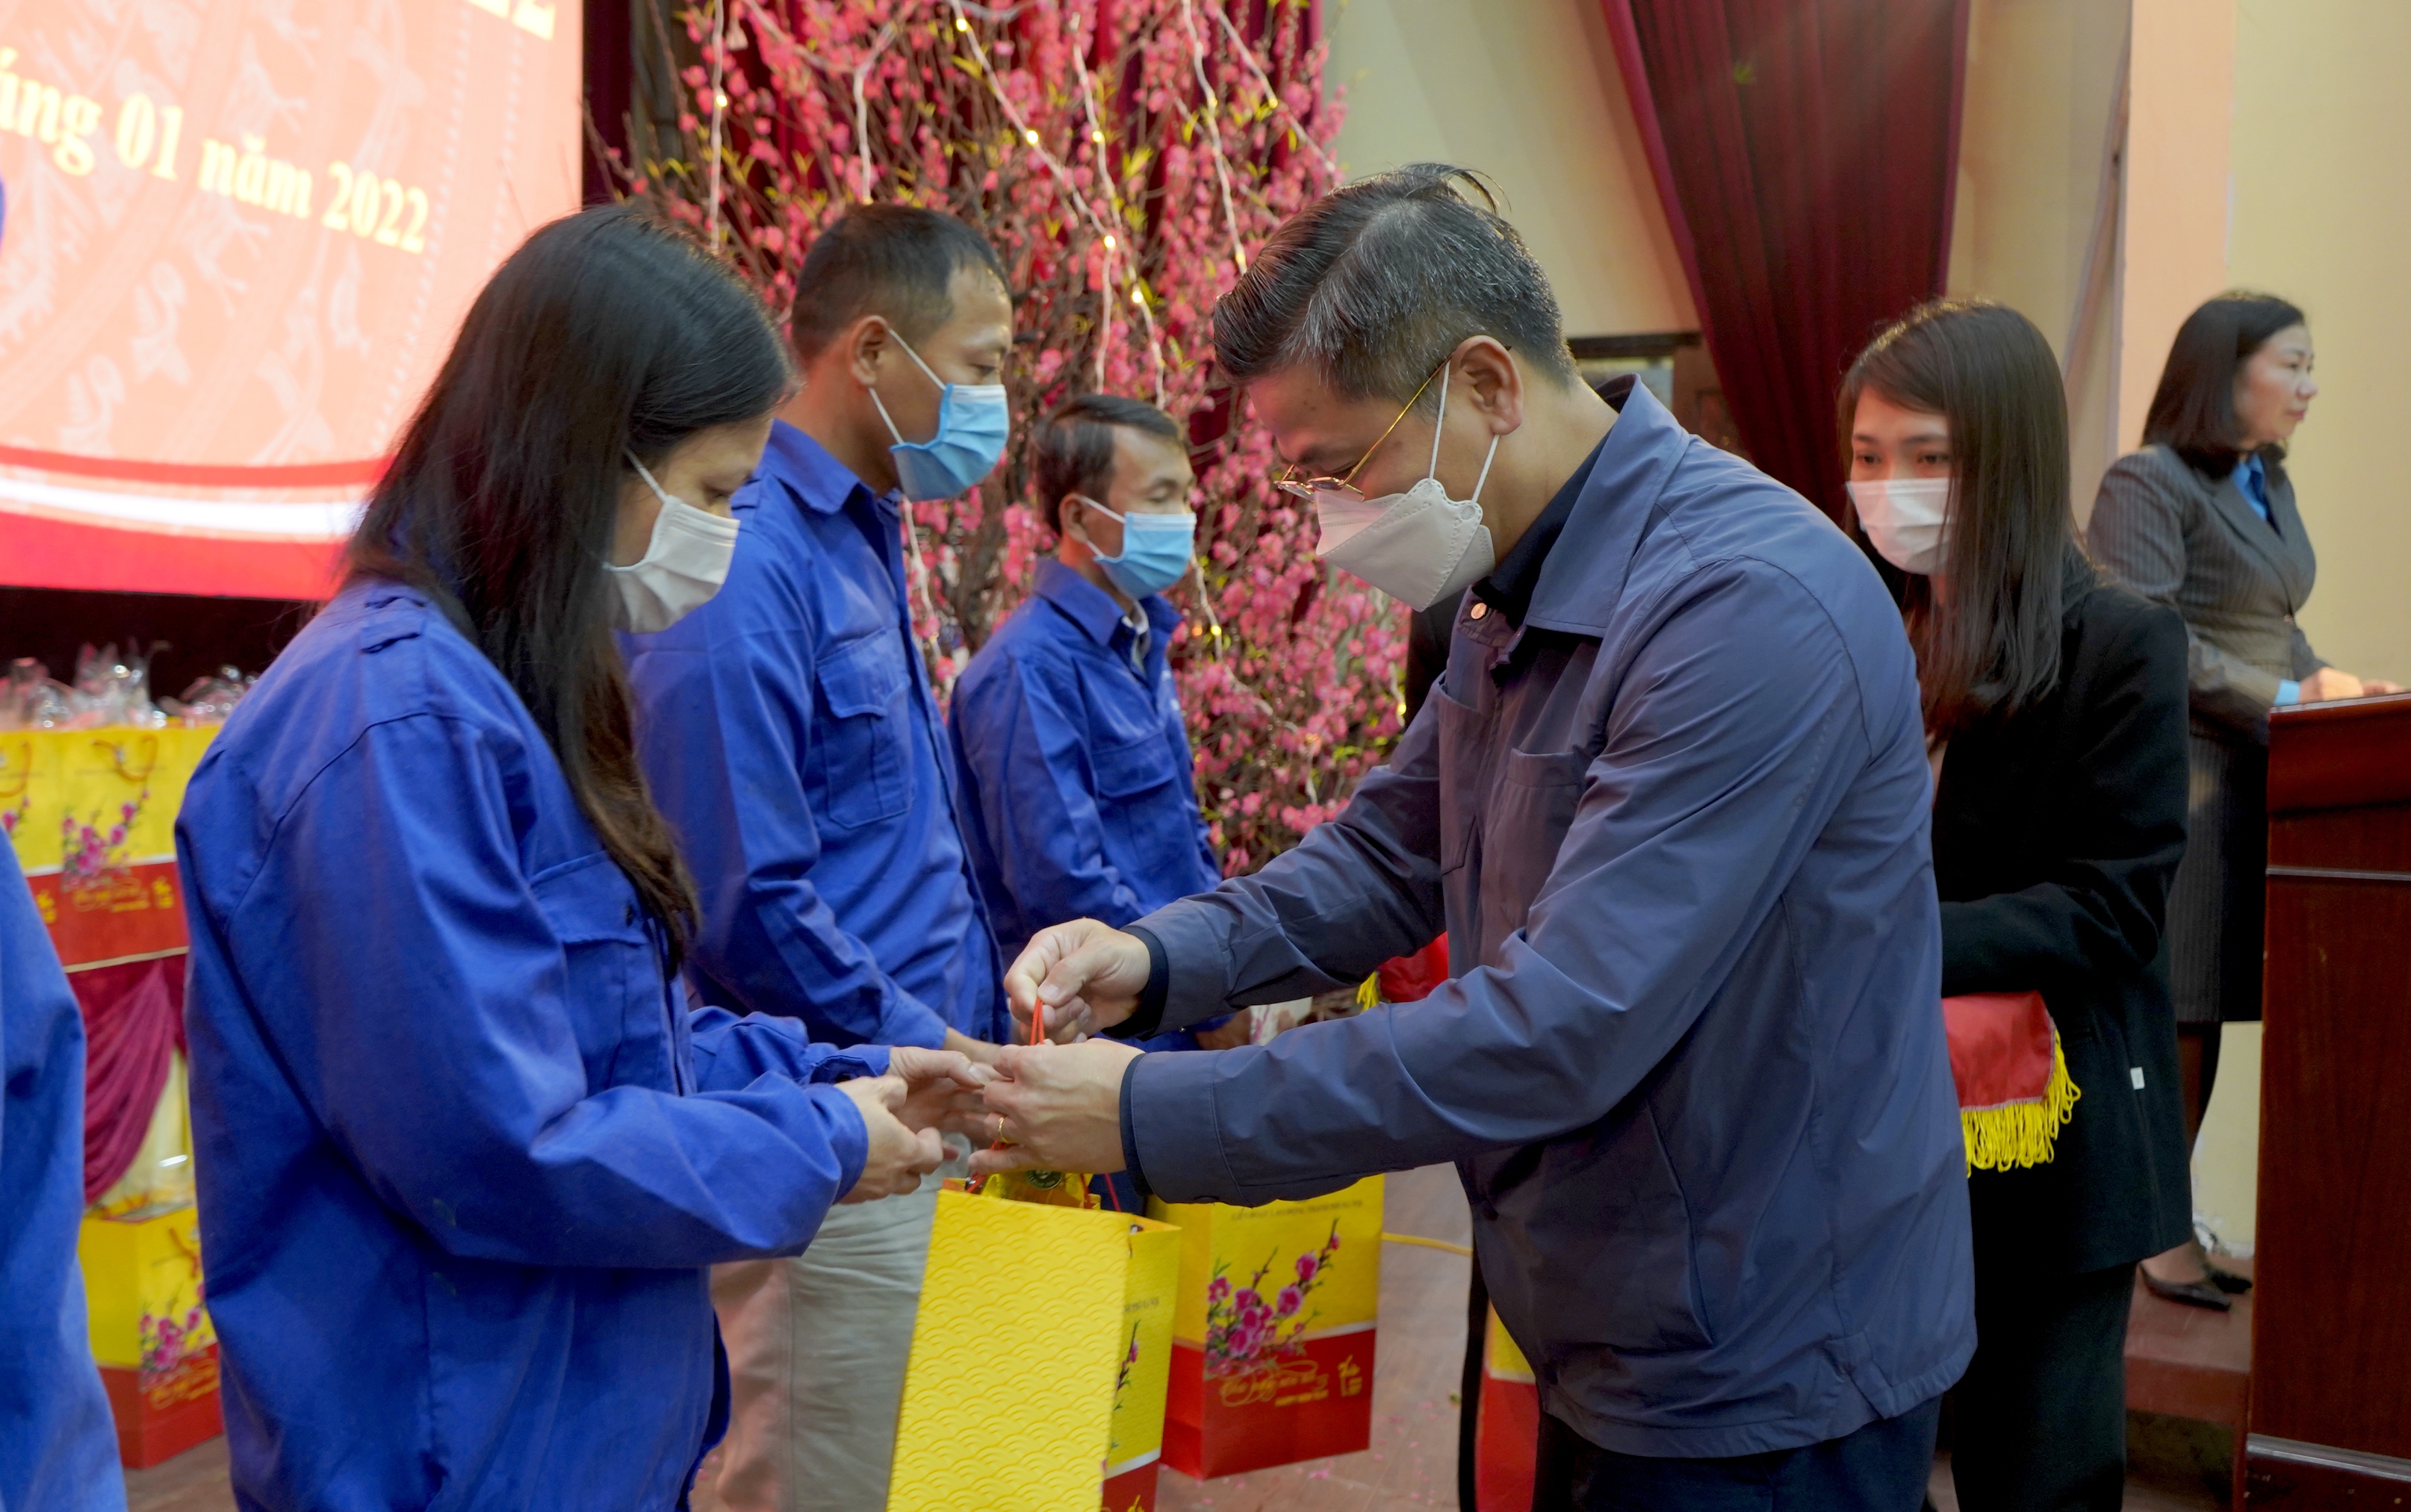 Chủ tịch LĐLĐ TP Hà Nội Nguyễn Phi Thường trao quà Tết cho lực lượng y tế, người lao động, gia đình khó khăn tại huyện Ứng Hòa